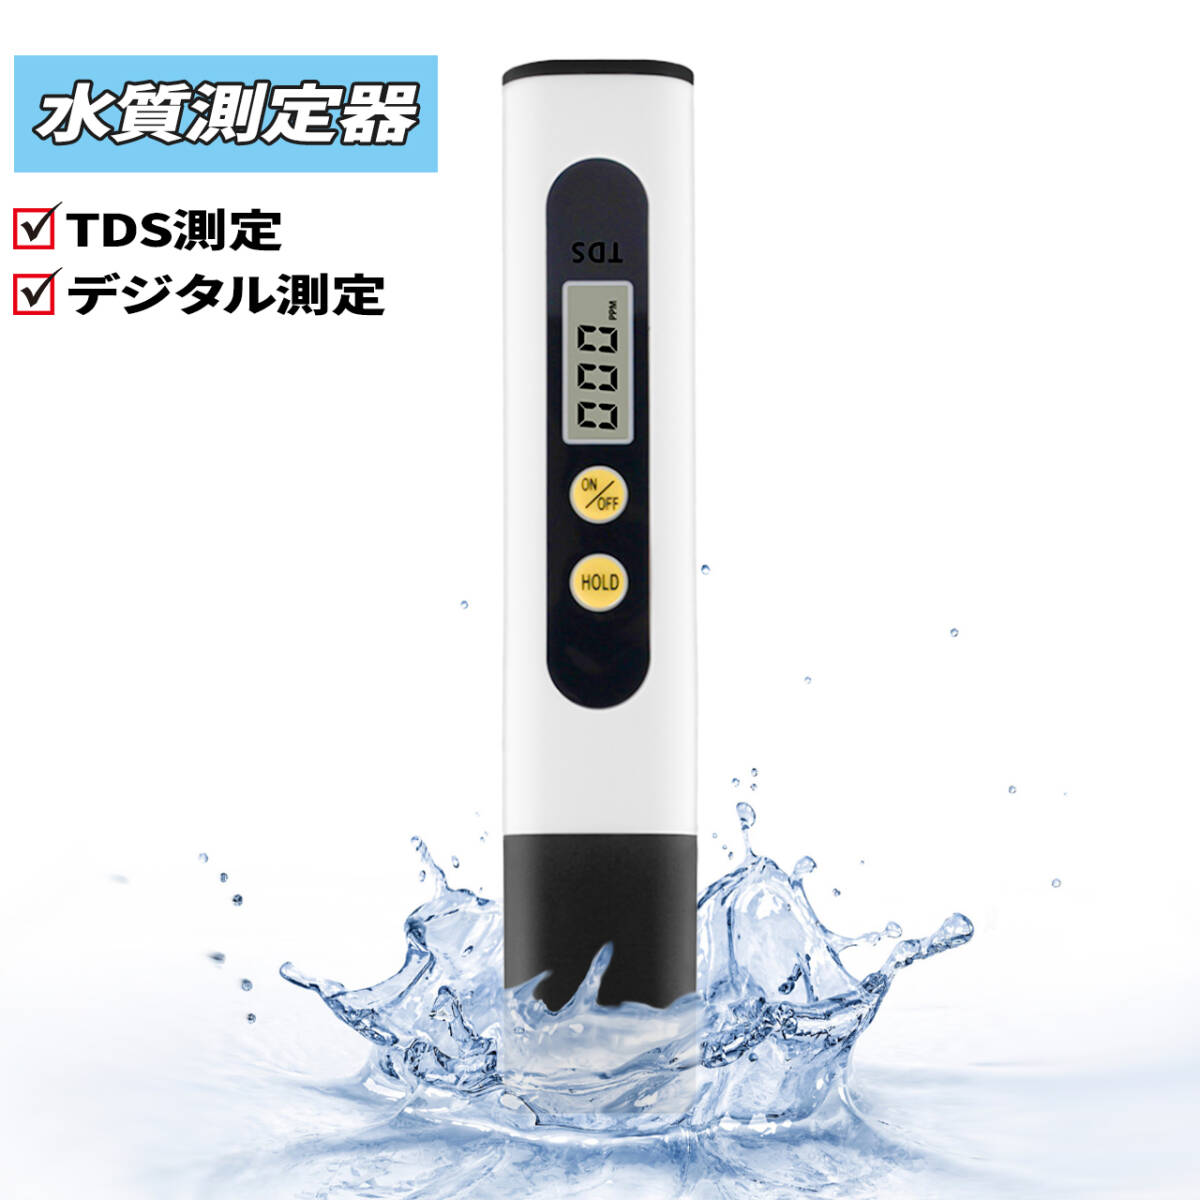 TDS измерительный прибор кофе концентрация и т.п.. измерение . цифровой прибор для проверки качества воды качество воды инспекция комплект контрольный номер 788